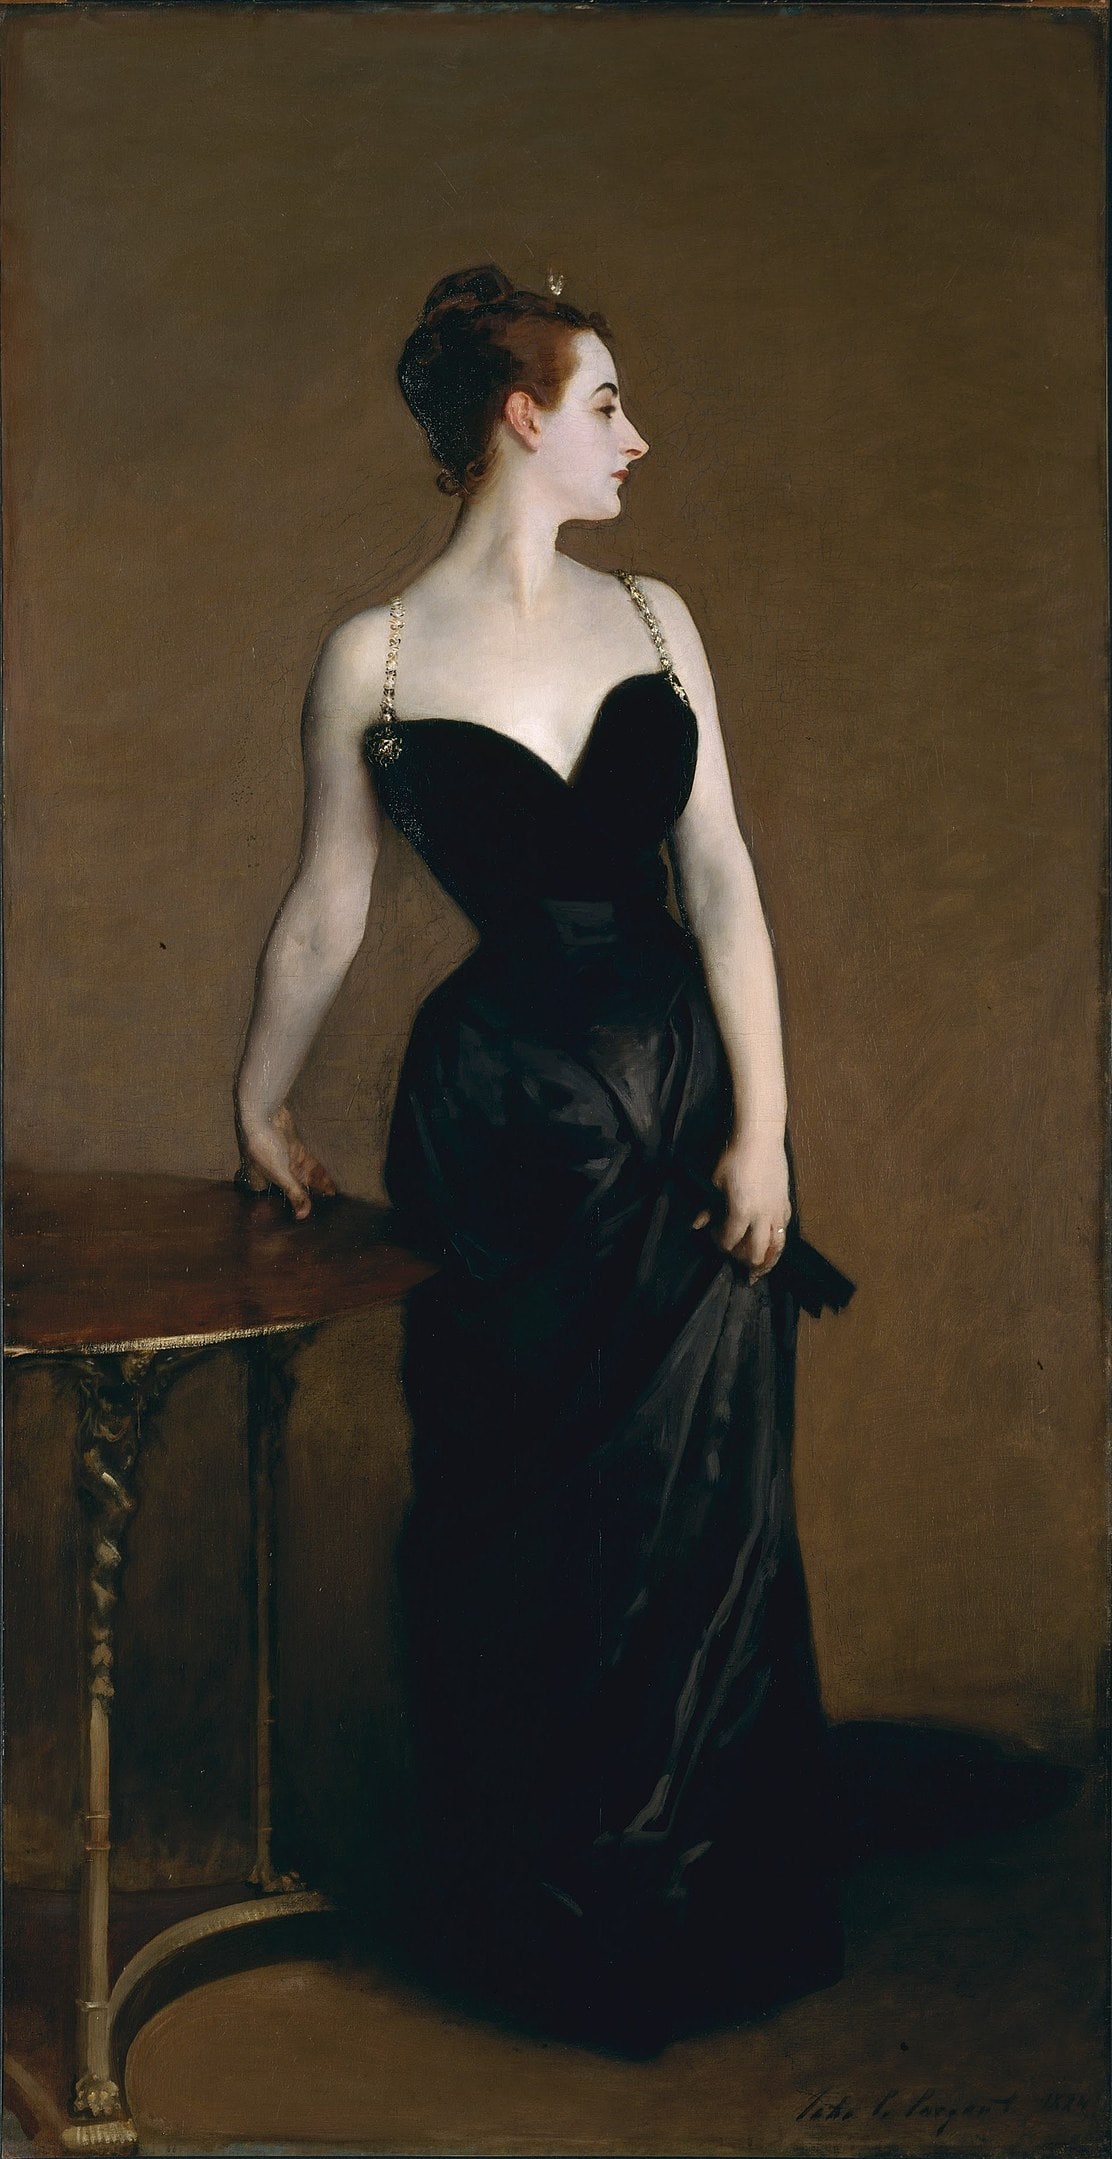 John Singer Sargent, Portrait of Madame X, 1884